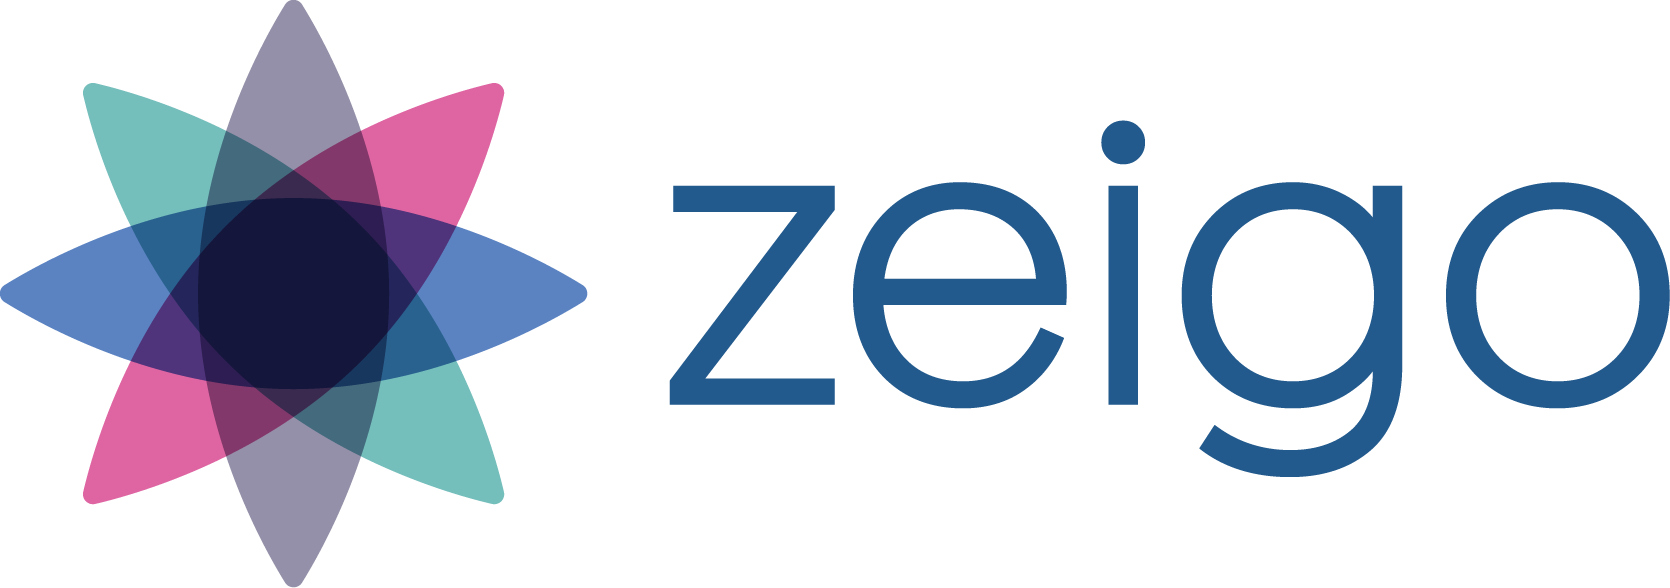 zeigo-2020-startup